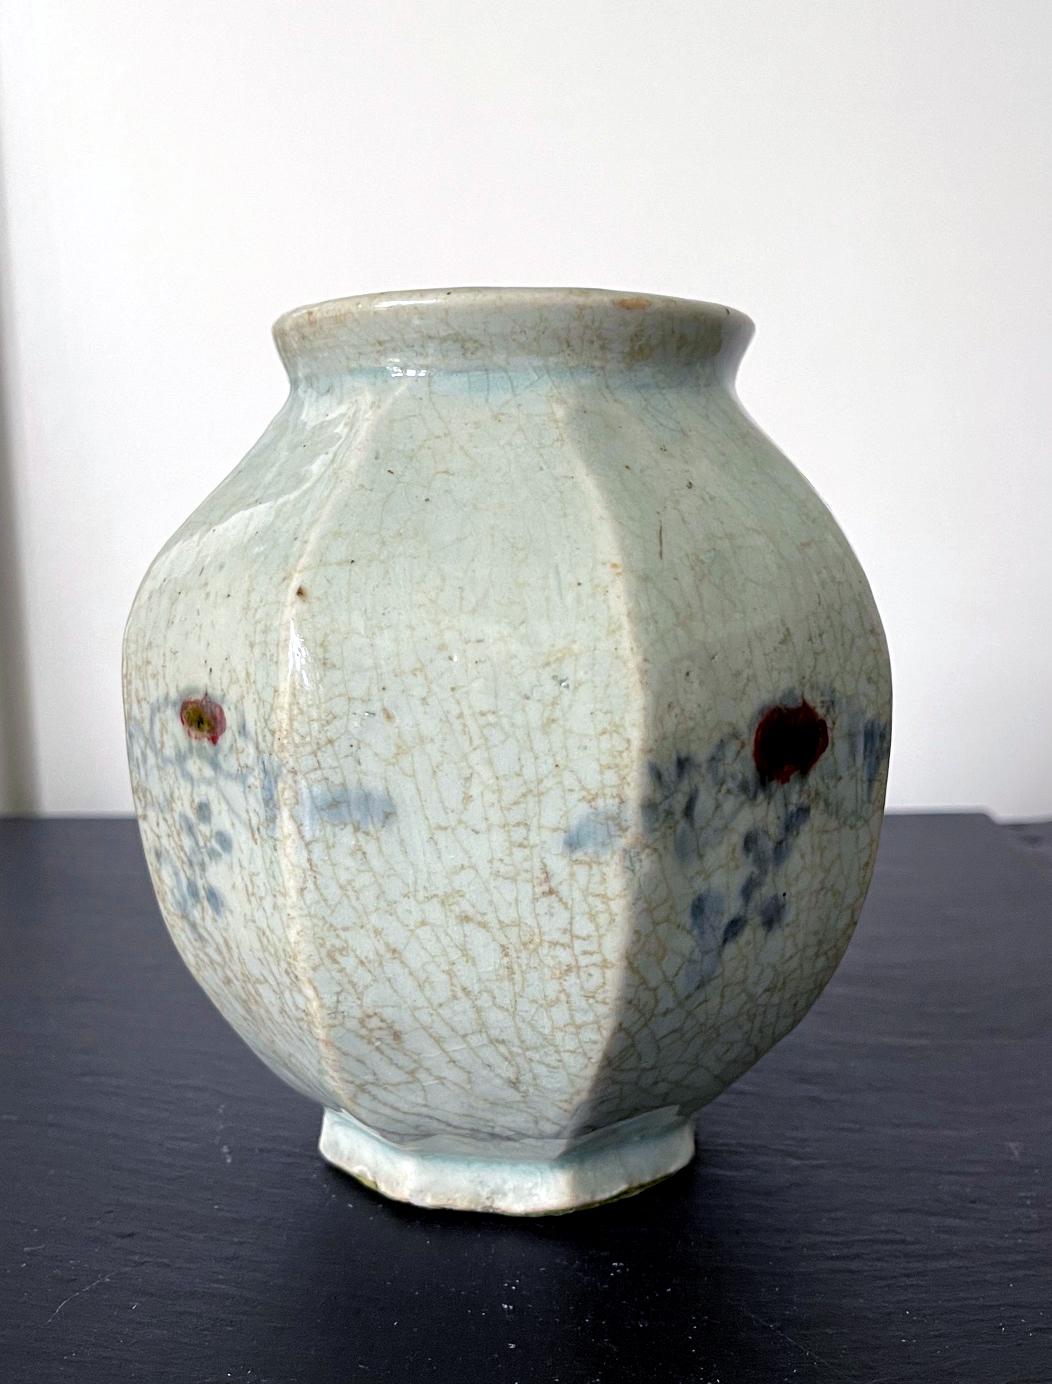 joseon dynasty pottery